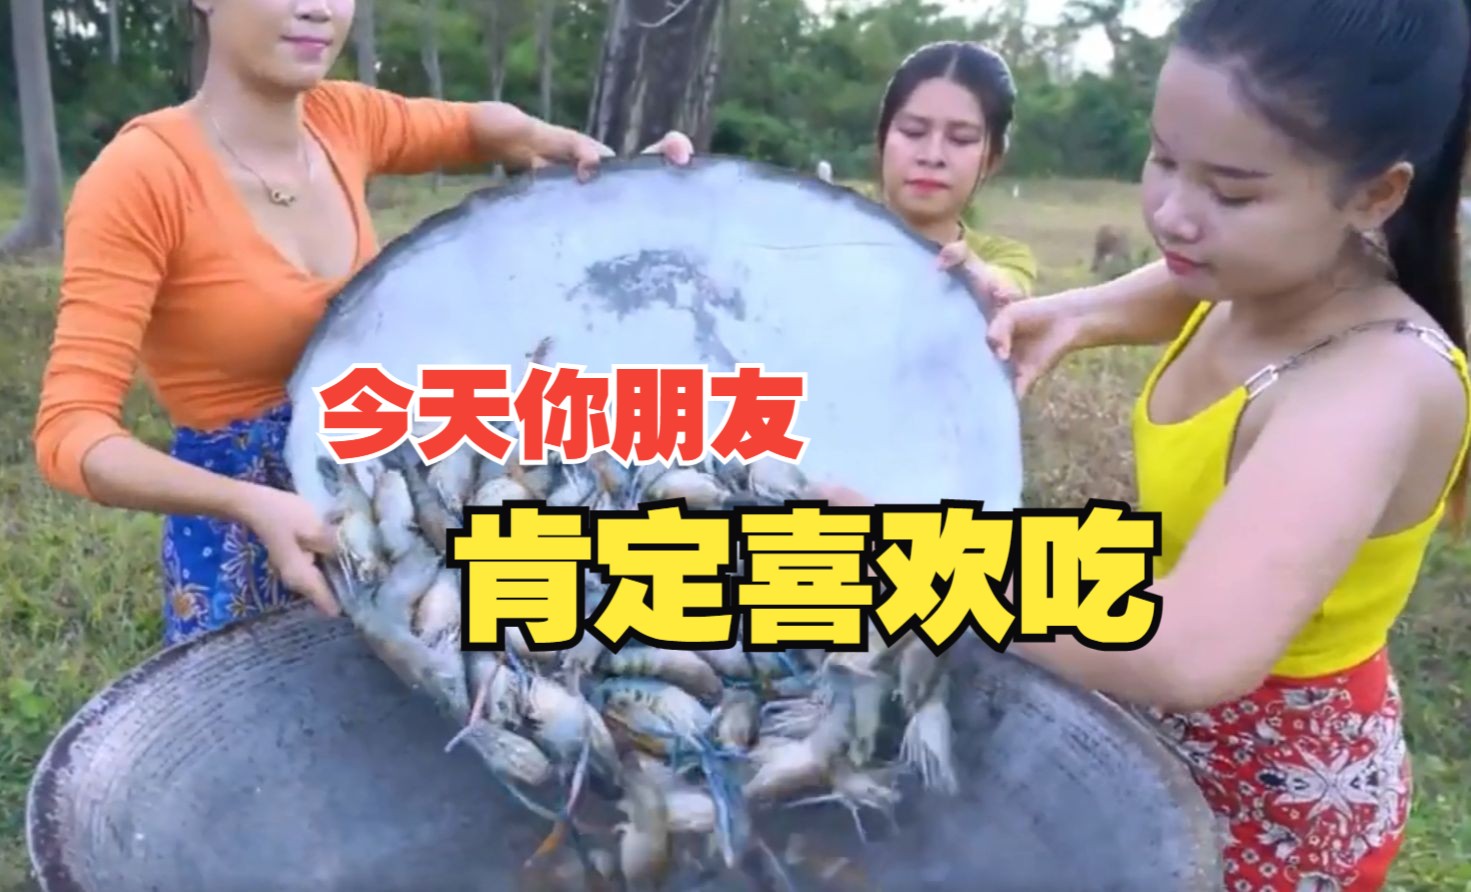 相对于越南风味的大虾，我想朋友们会更喜欢越南风味的着装